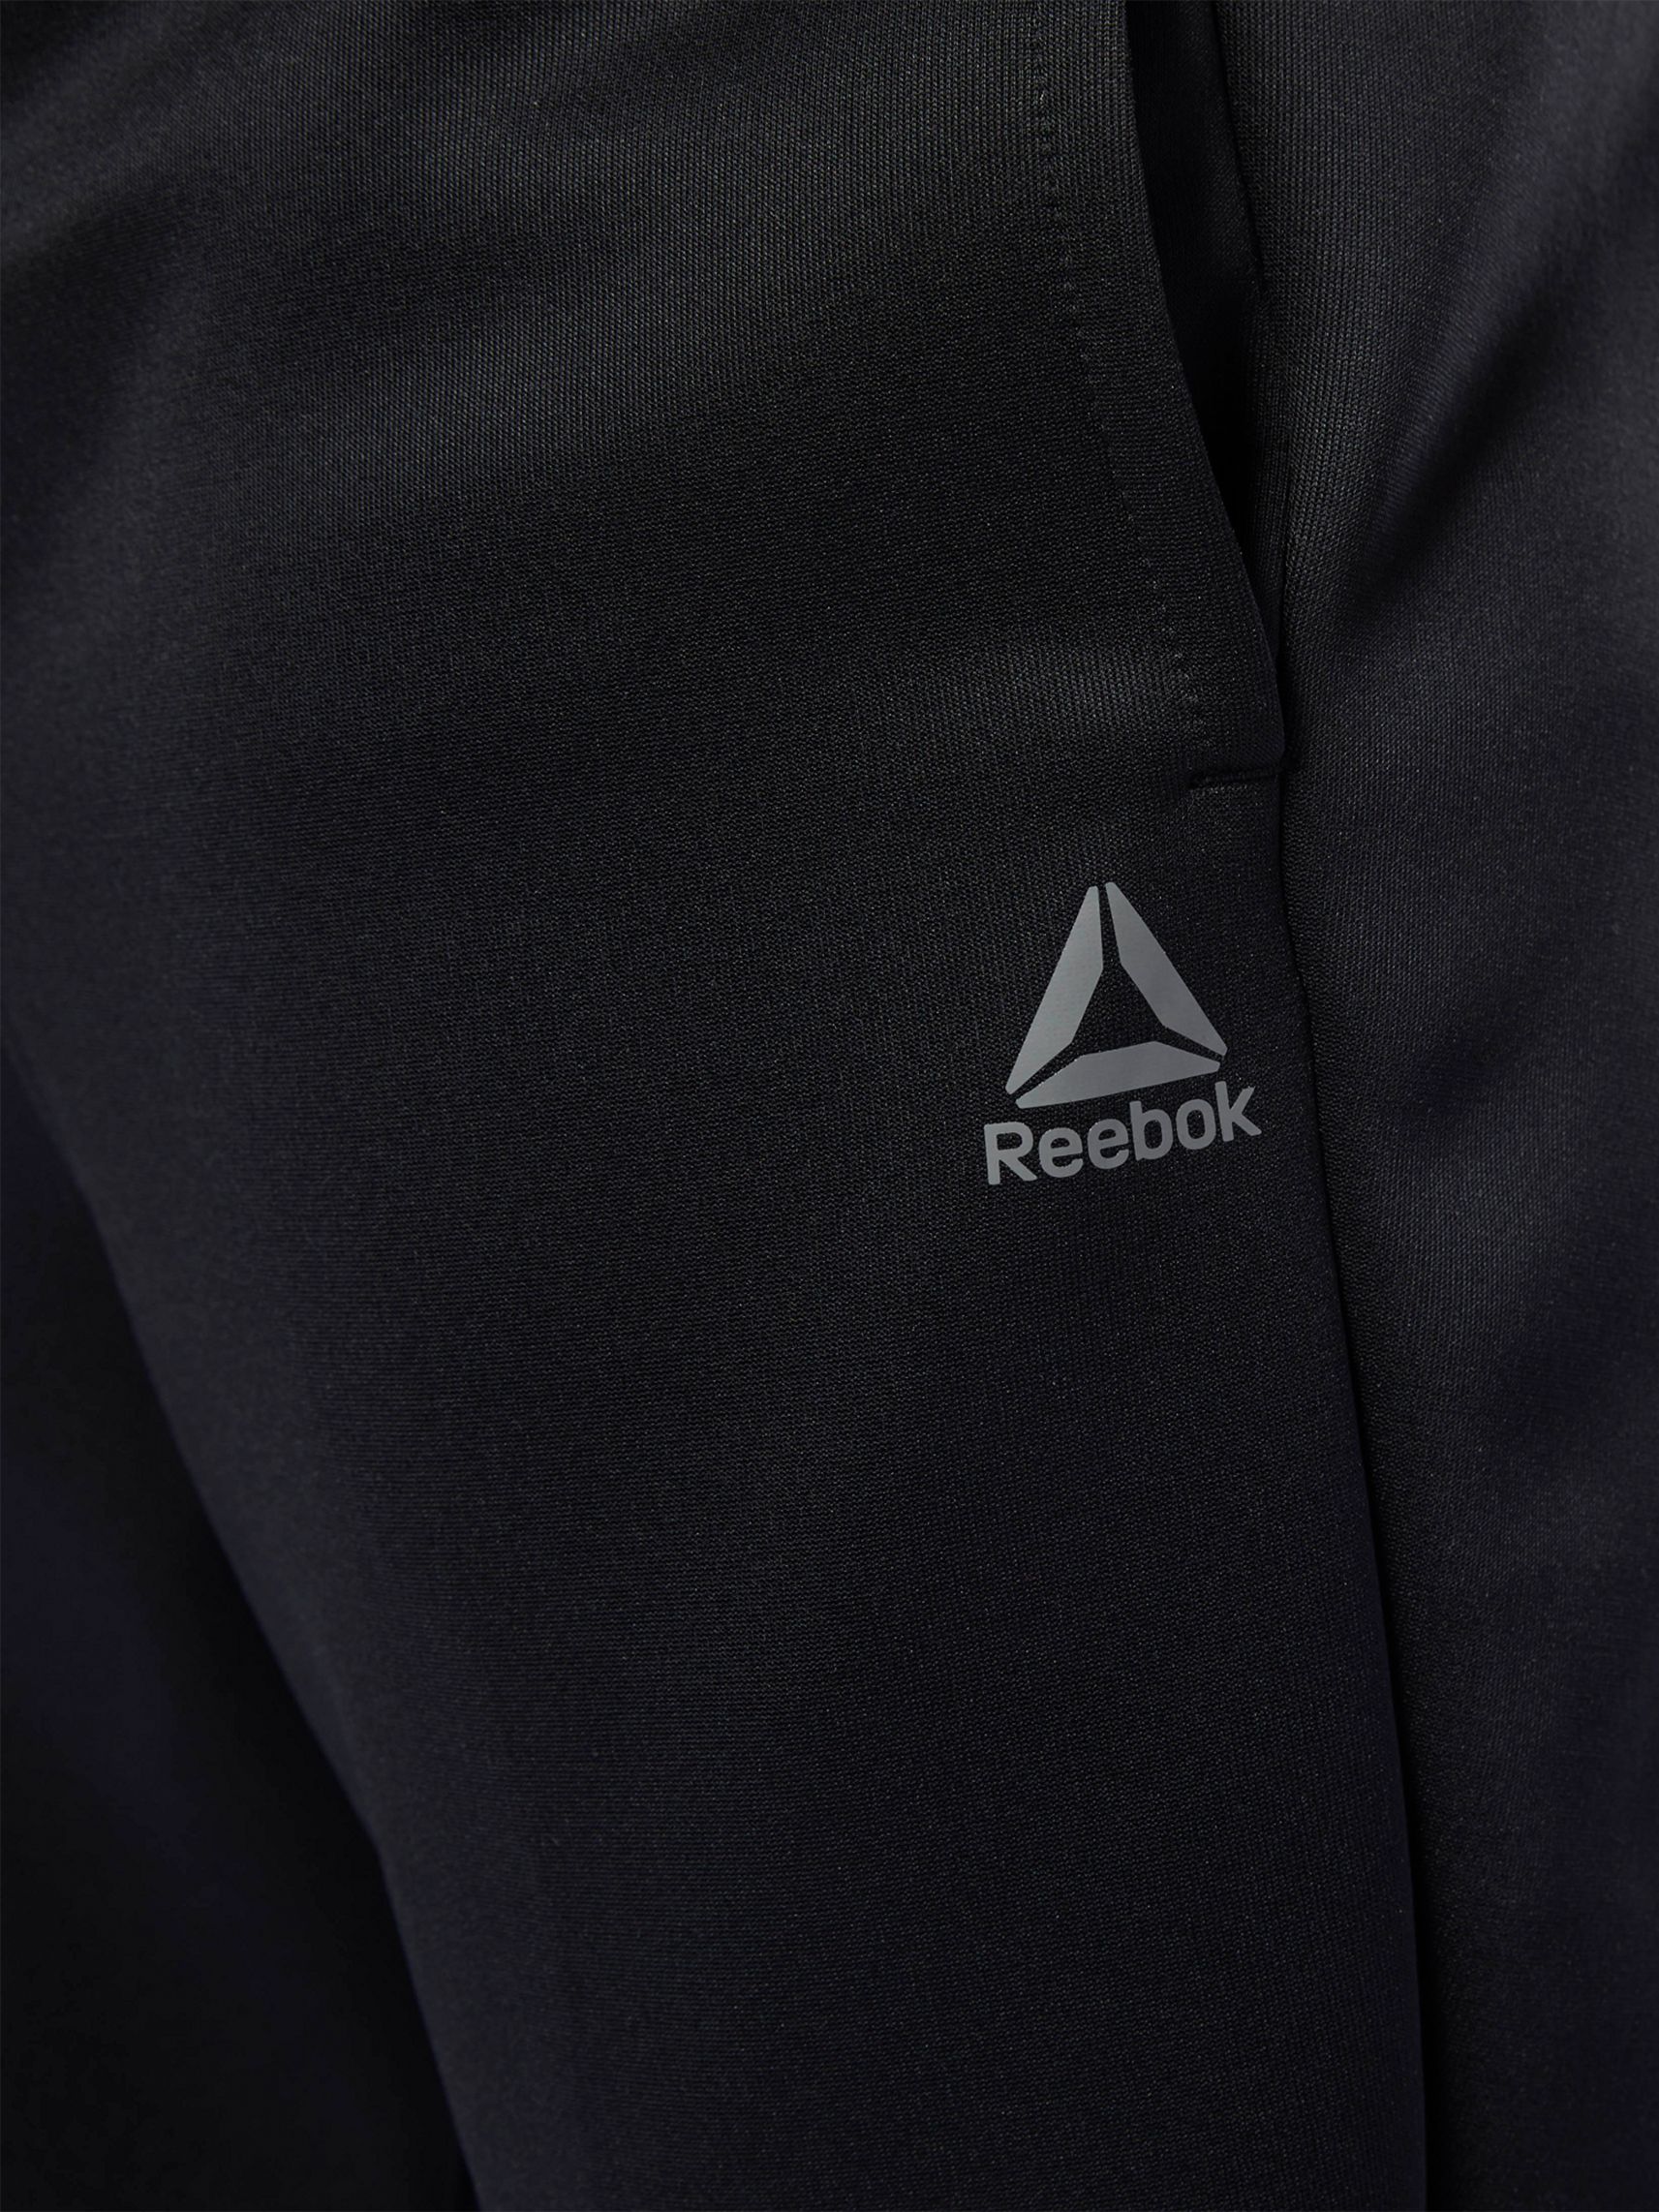 reebok one series three pack organisational set black